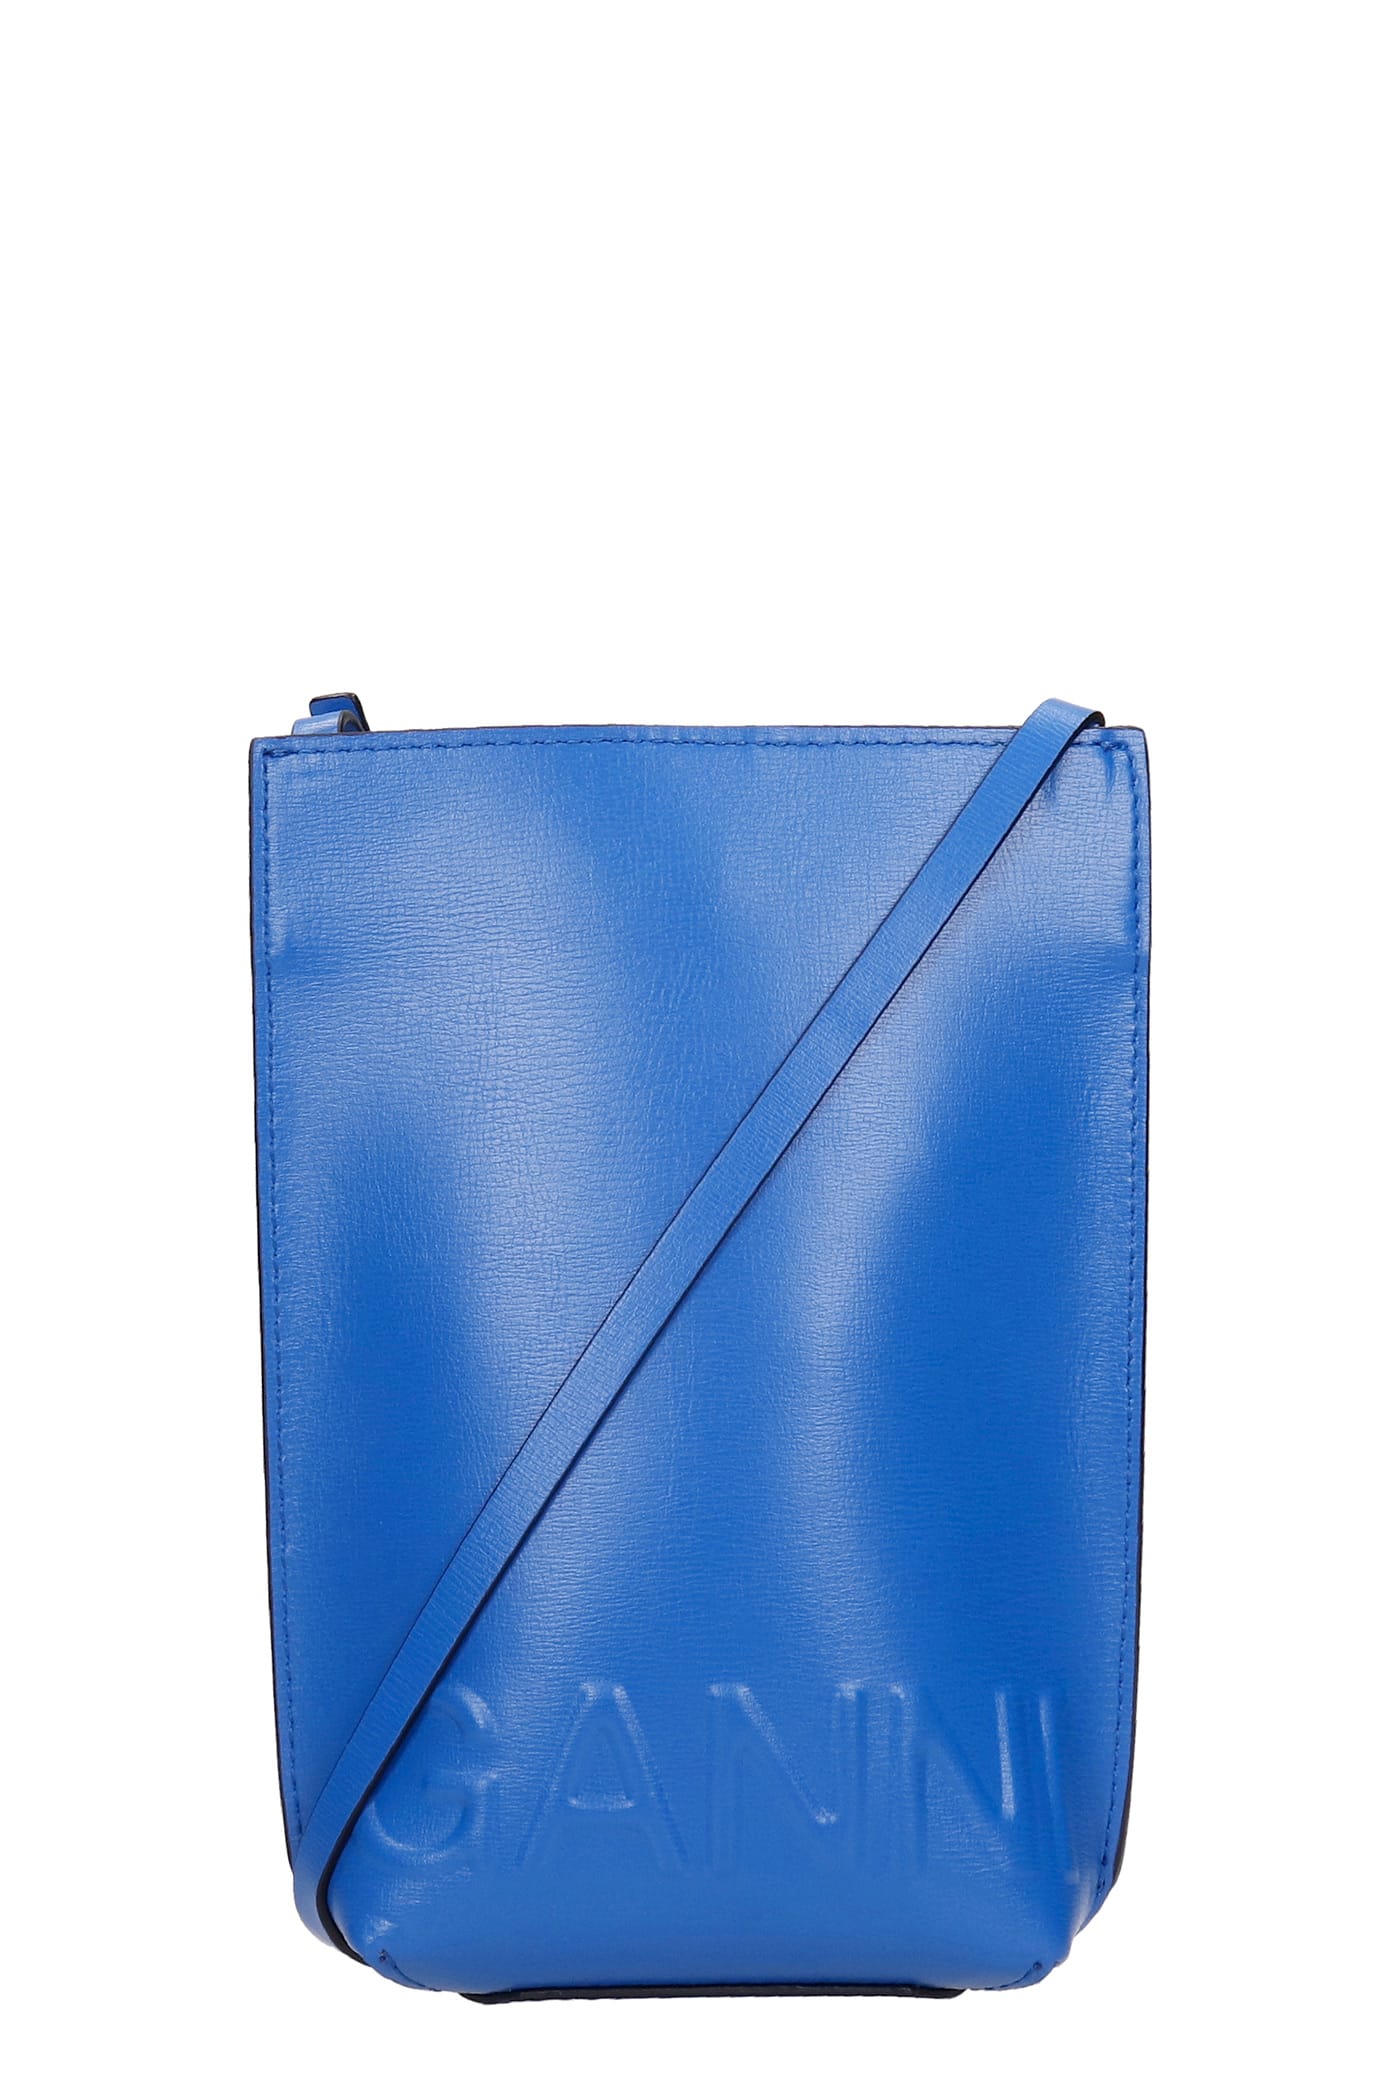 Ganni Shoulder Bag In Blue Leather